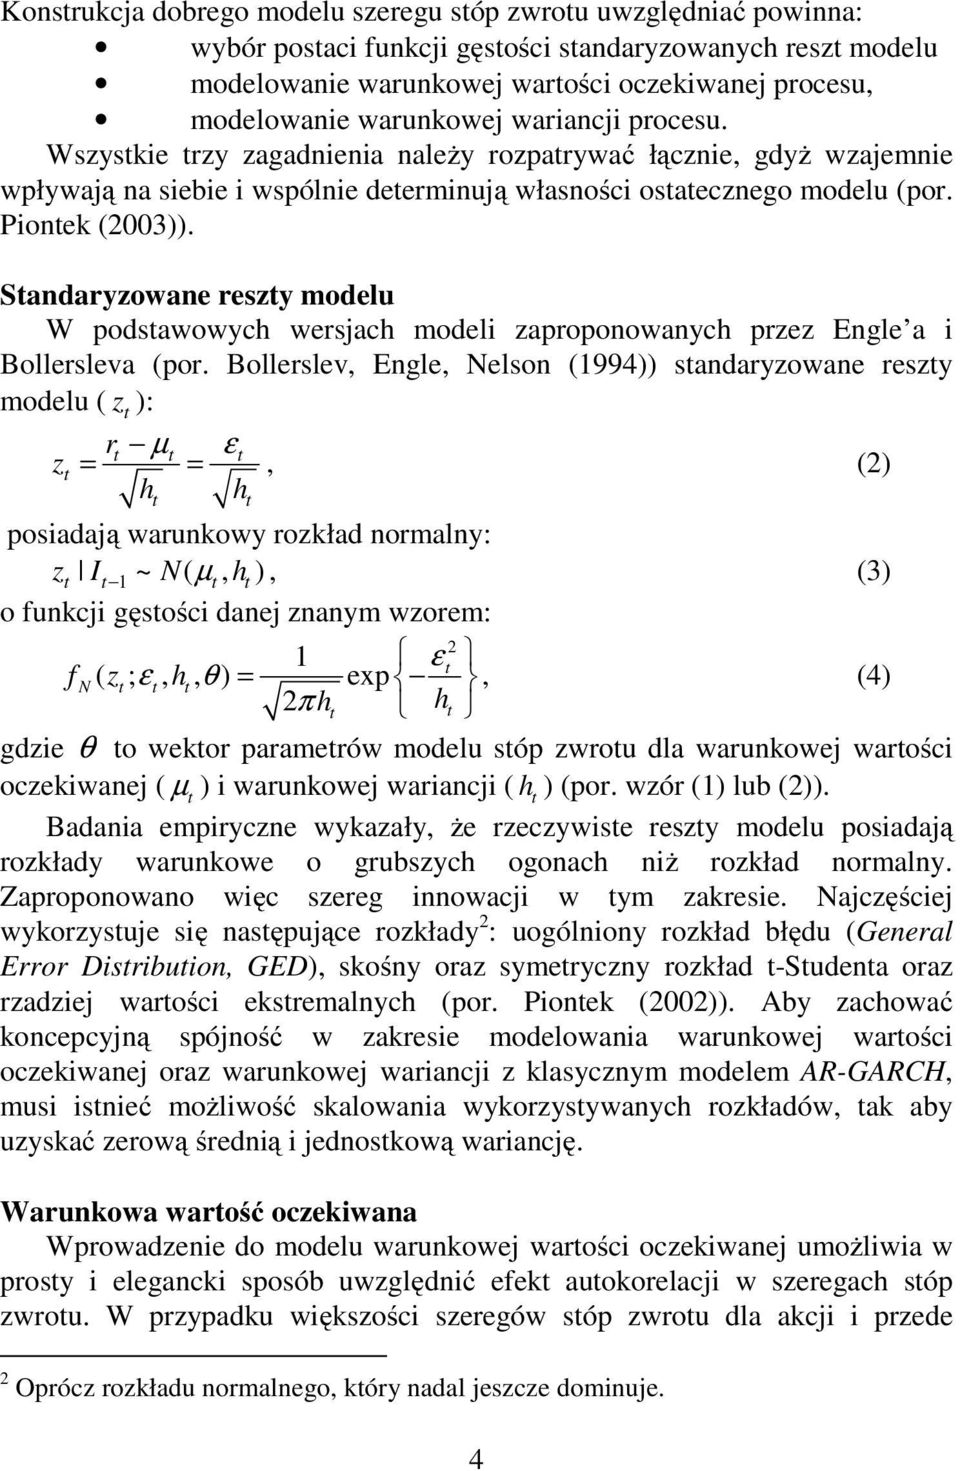 Sandaryzowane reszy modelu W podsawowych wersjach modeli zaproponowanych przez Engle a i Bollersleva (por.